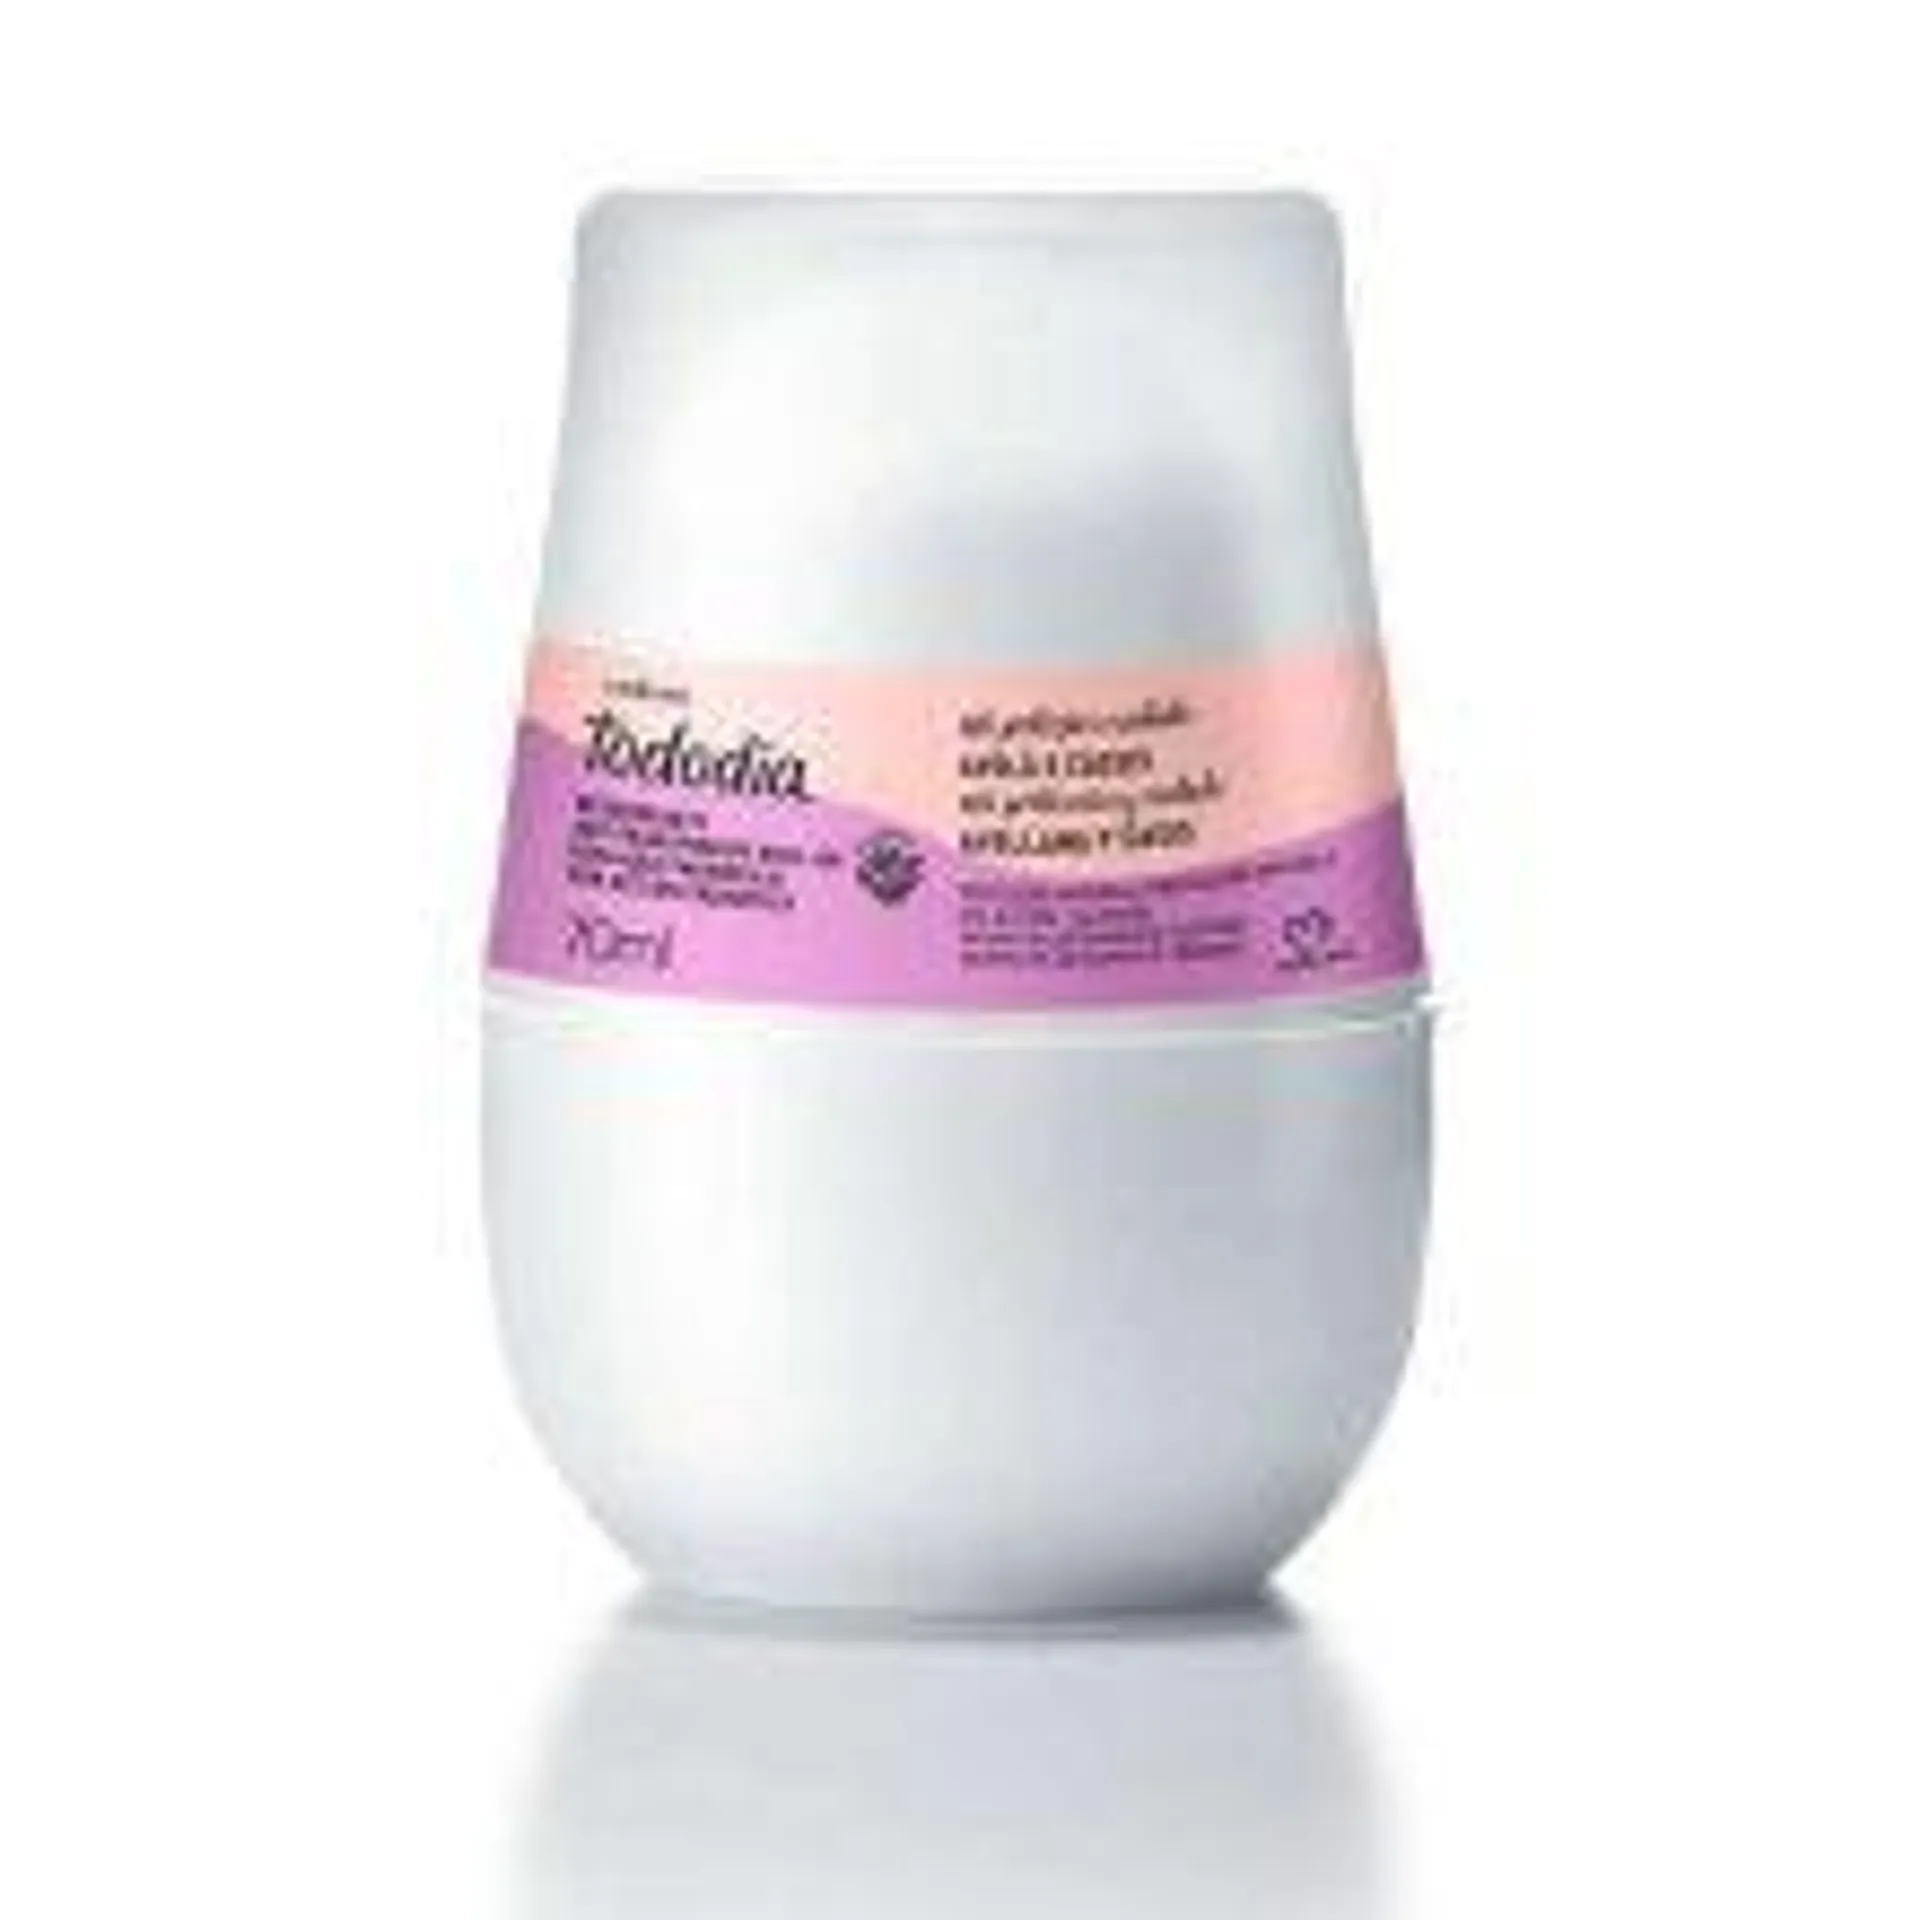 Tododia Desodorante antitranspirante roll-on avellana y casis 70 ml